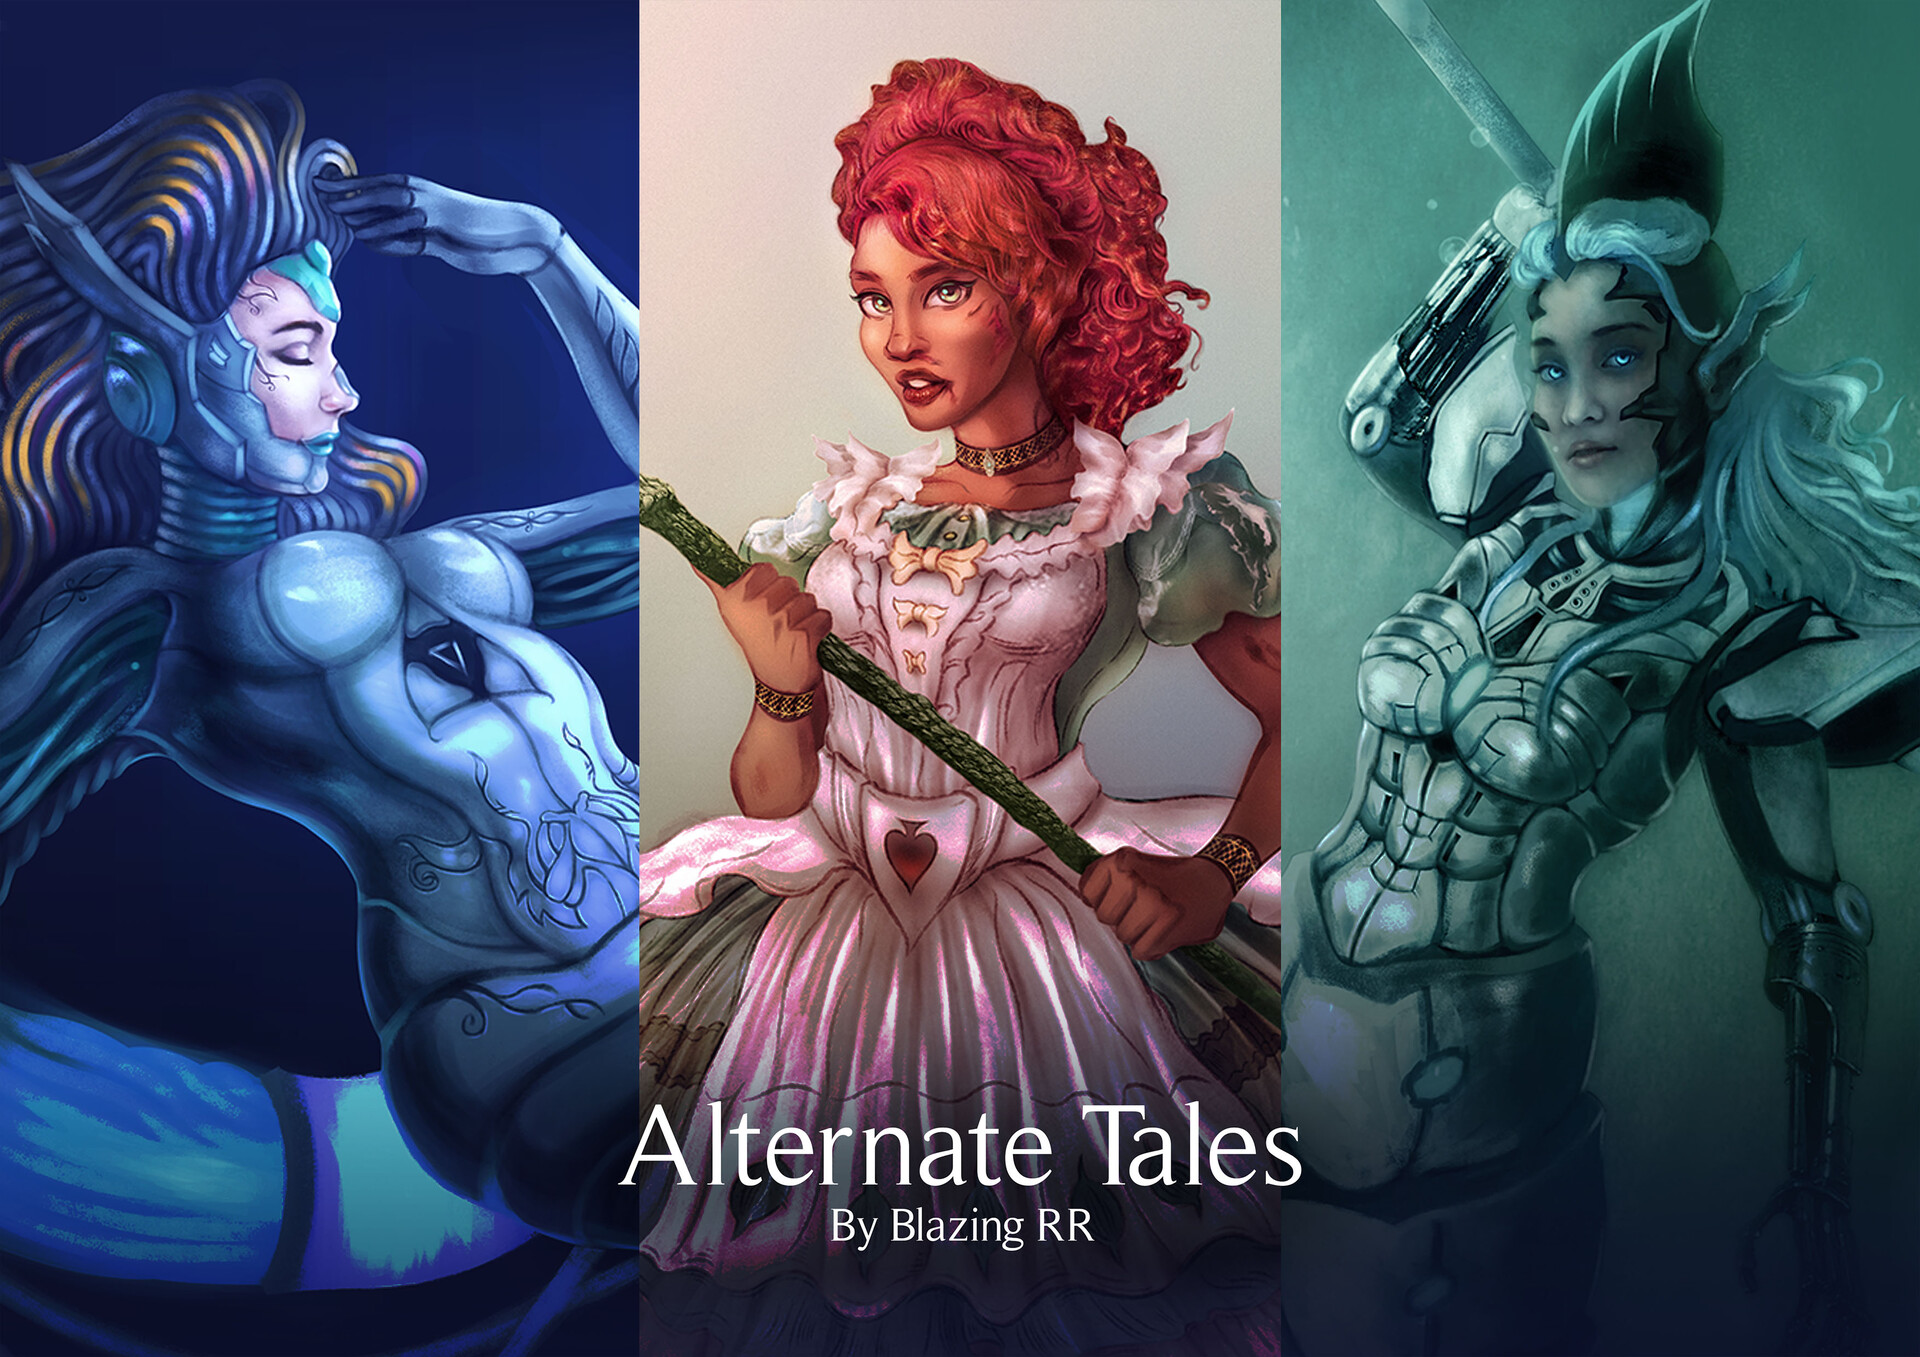 ArtStation - Alternate Tales